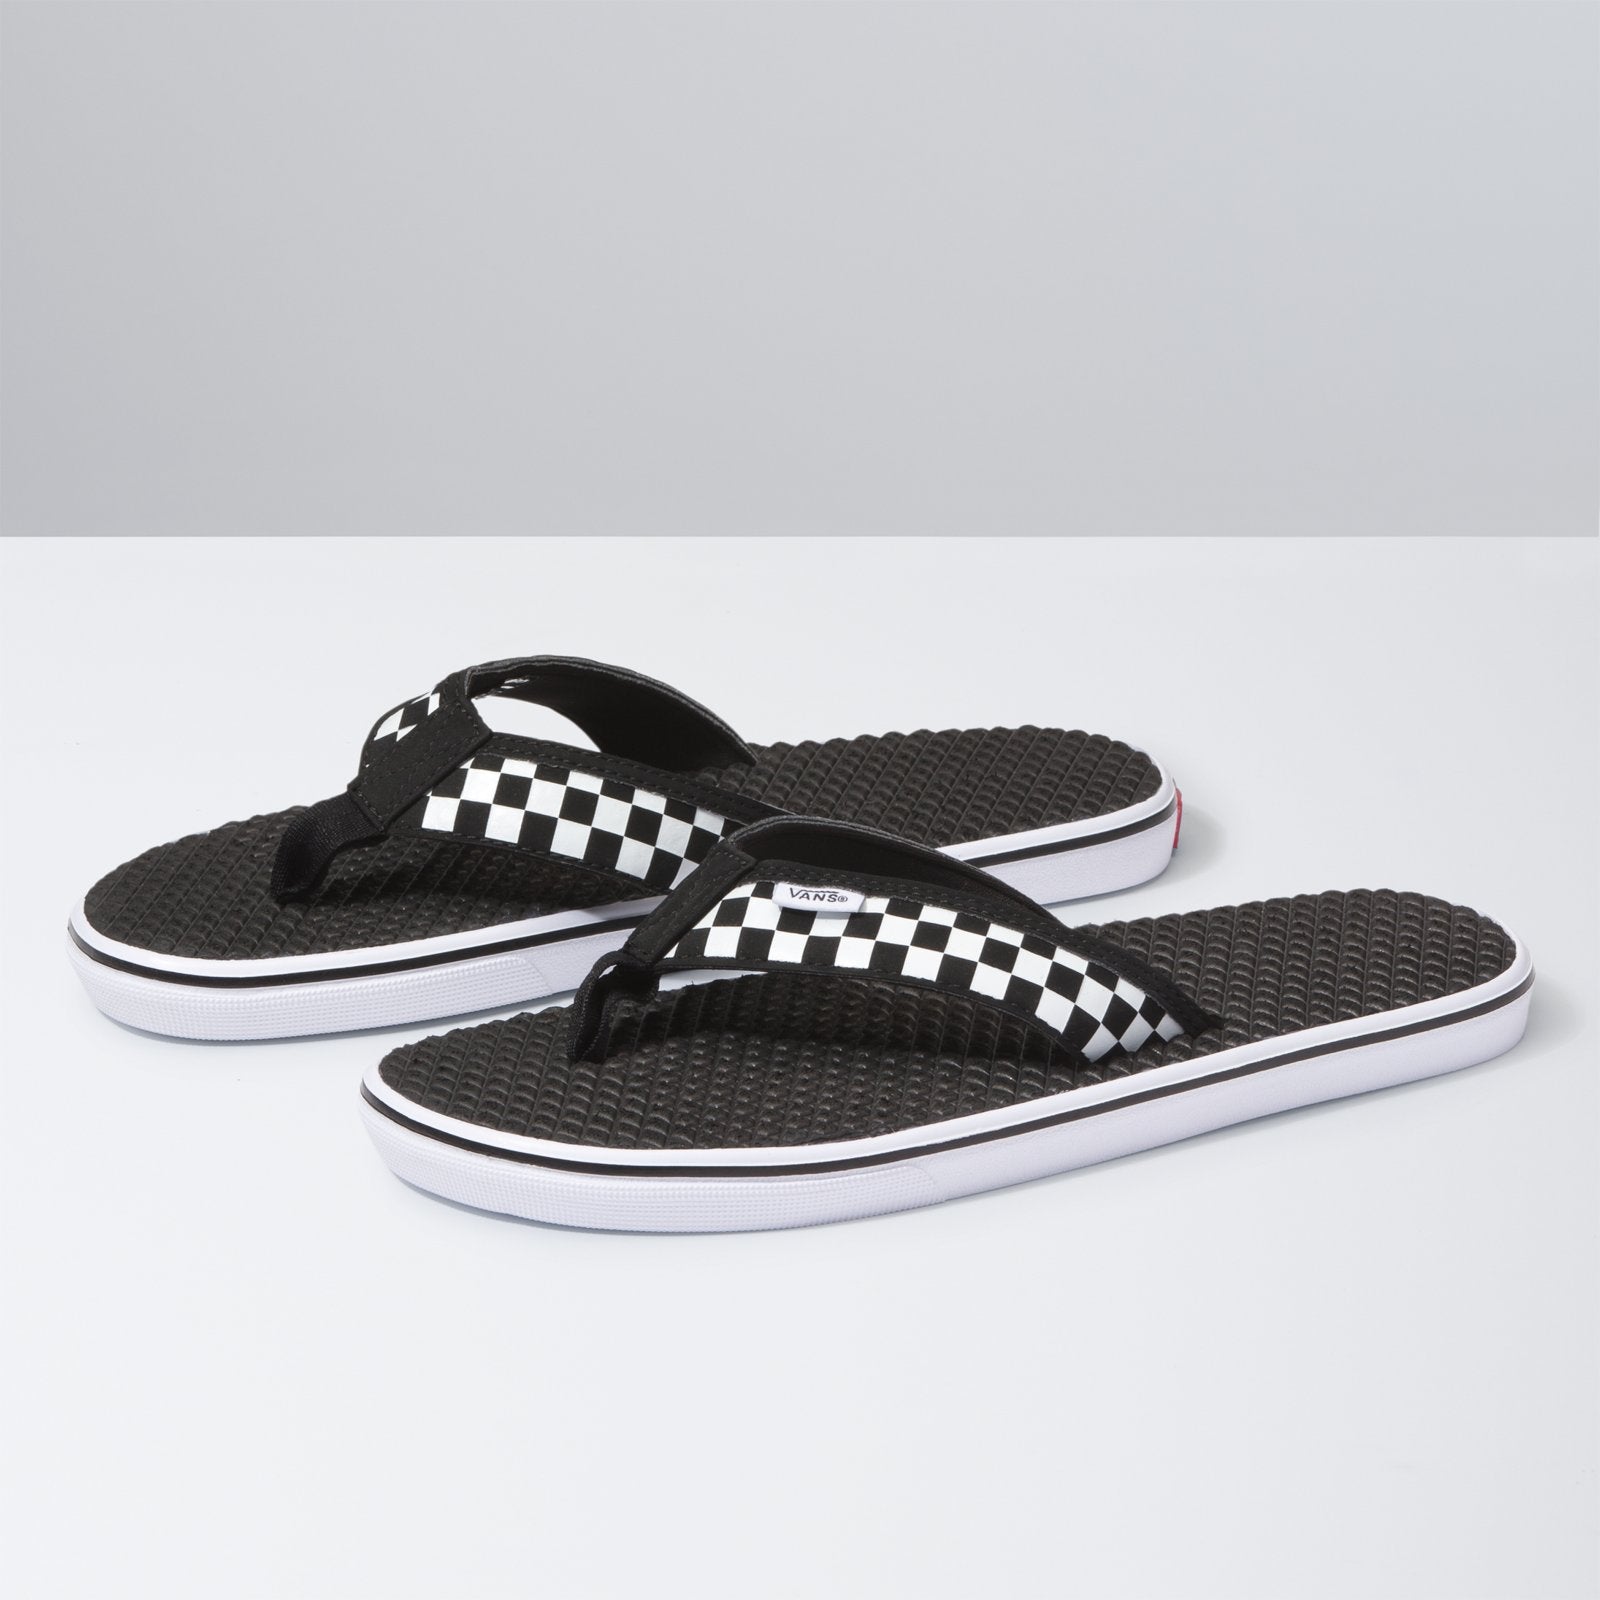 La Costa Lite Sandal - Black/Checkerboard - PK